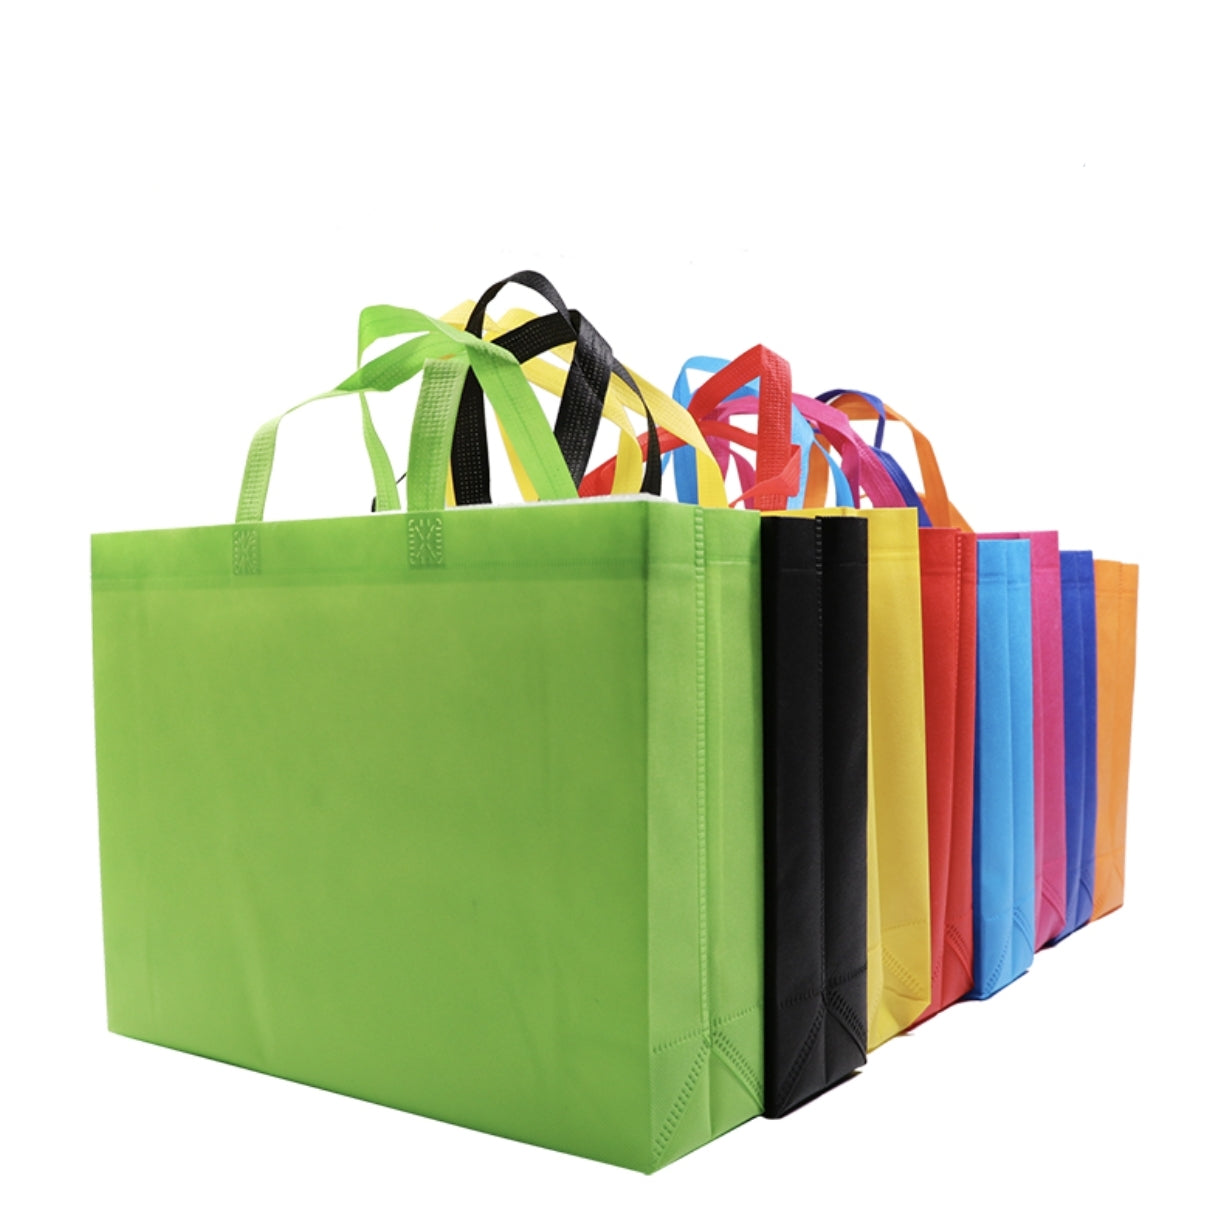 不織布手提購物袋印刷- 禮品、贈品、客製化禮贈品專家| 禮歐禮贈品